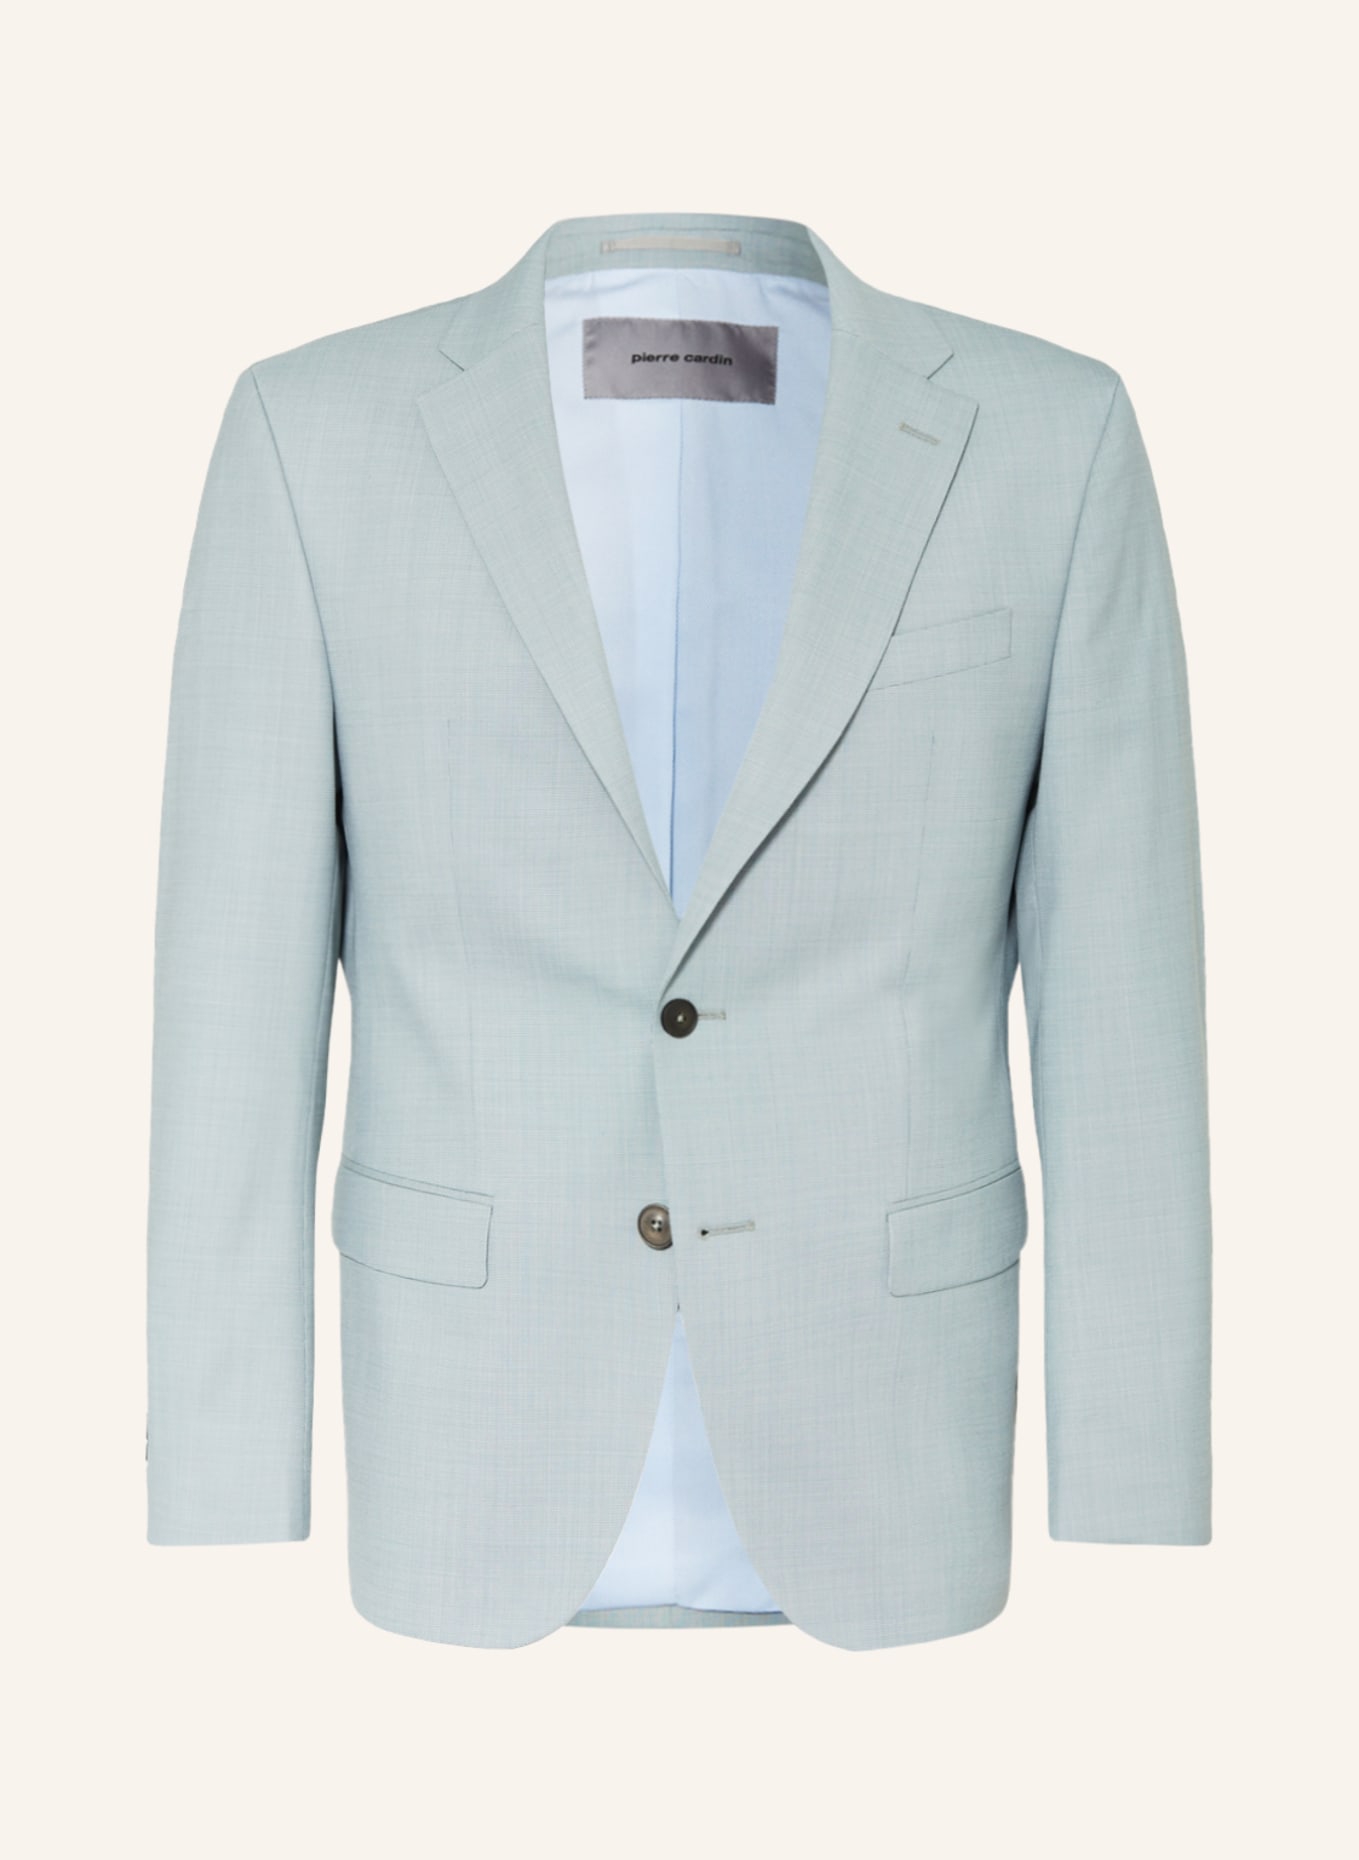 pierre cardin Suit jacket GRANT Regular Fit, Color: 5010 Mint (Image 1)